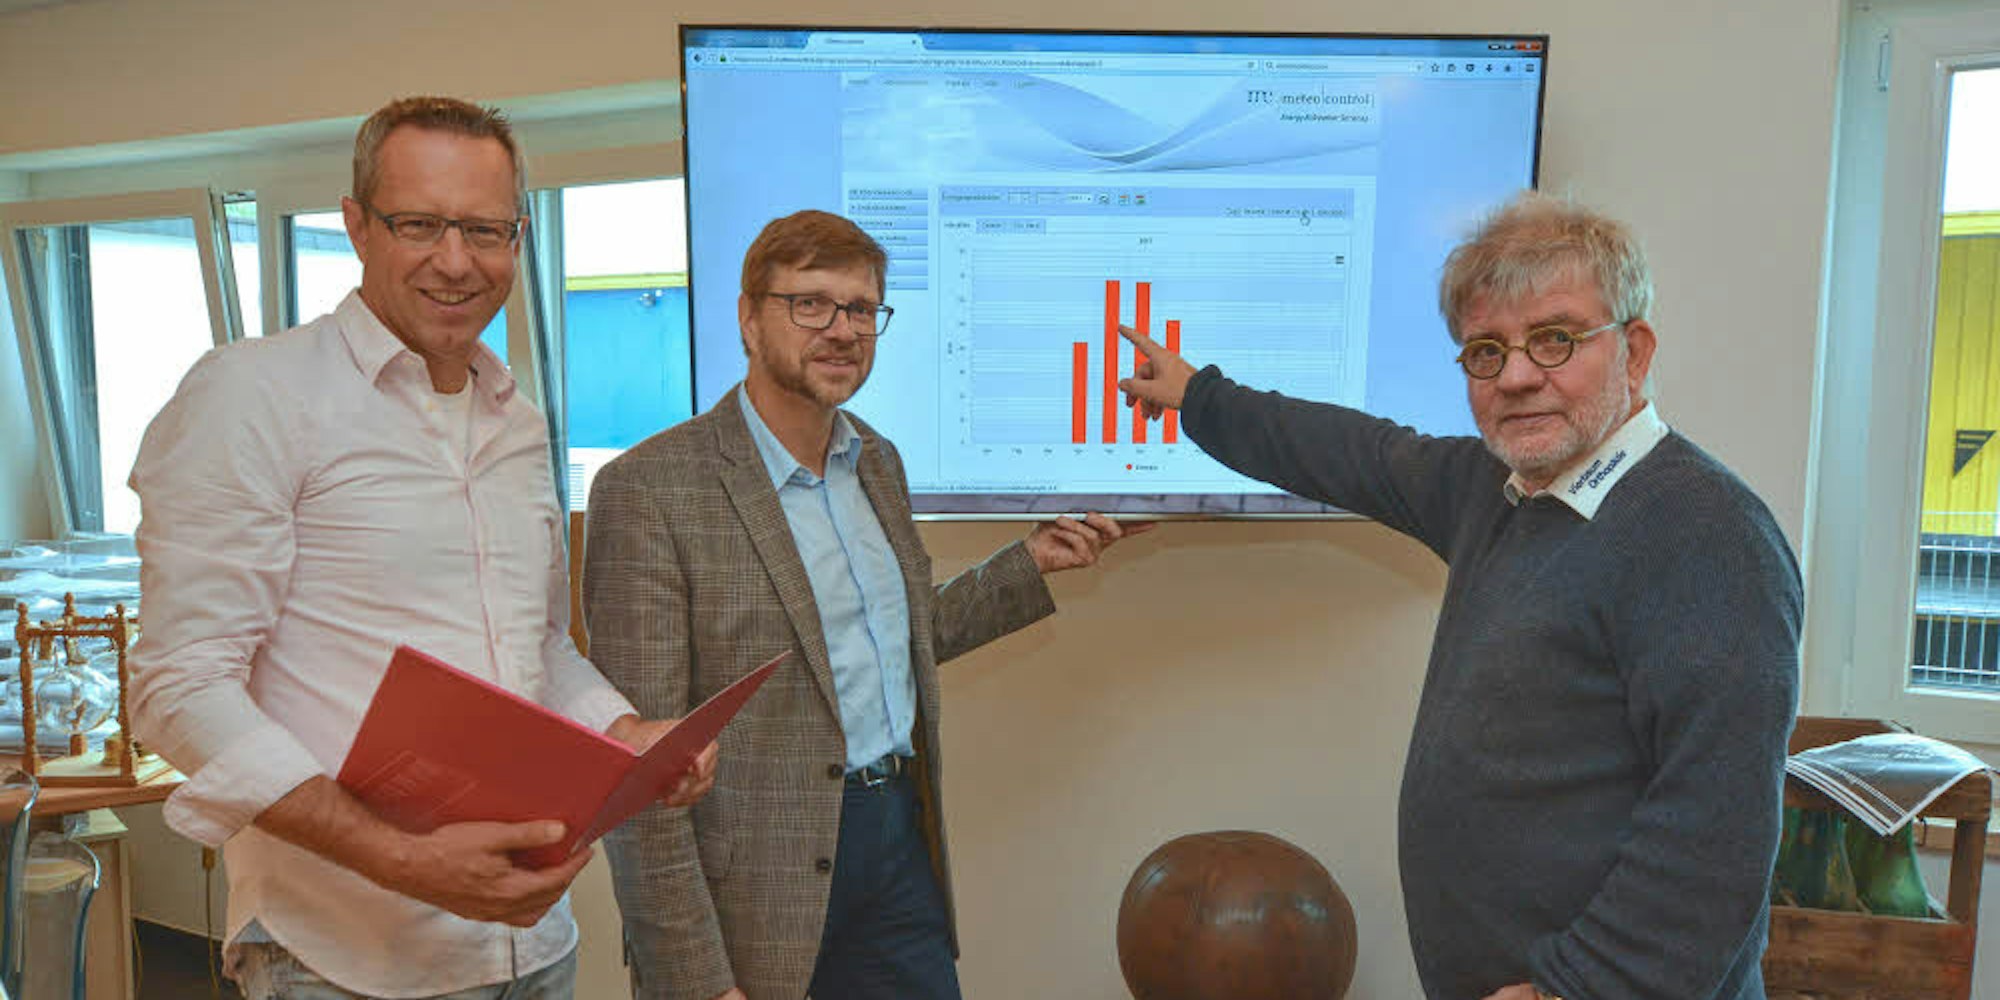 Auf dem Bildschirm kann Peter Vierbaum (r.) mit Guido Wendeler (l.) und Thomas Willmer von der EGBL, die Leistungsfähigkeit der Anlage verfolgen, die die Energiegenossenschaft auf dem Dach seiner Halle installiert hat.